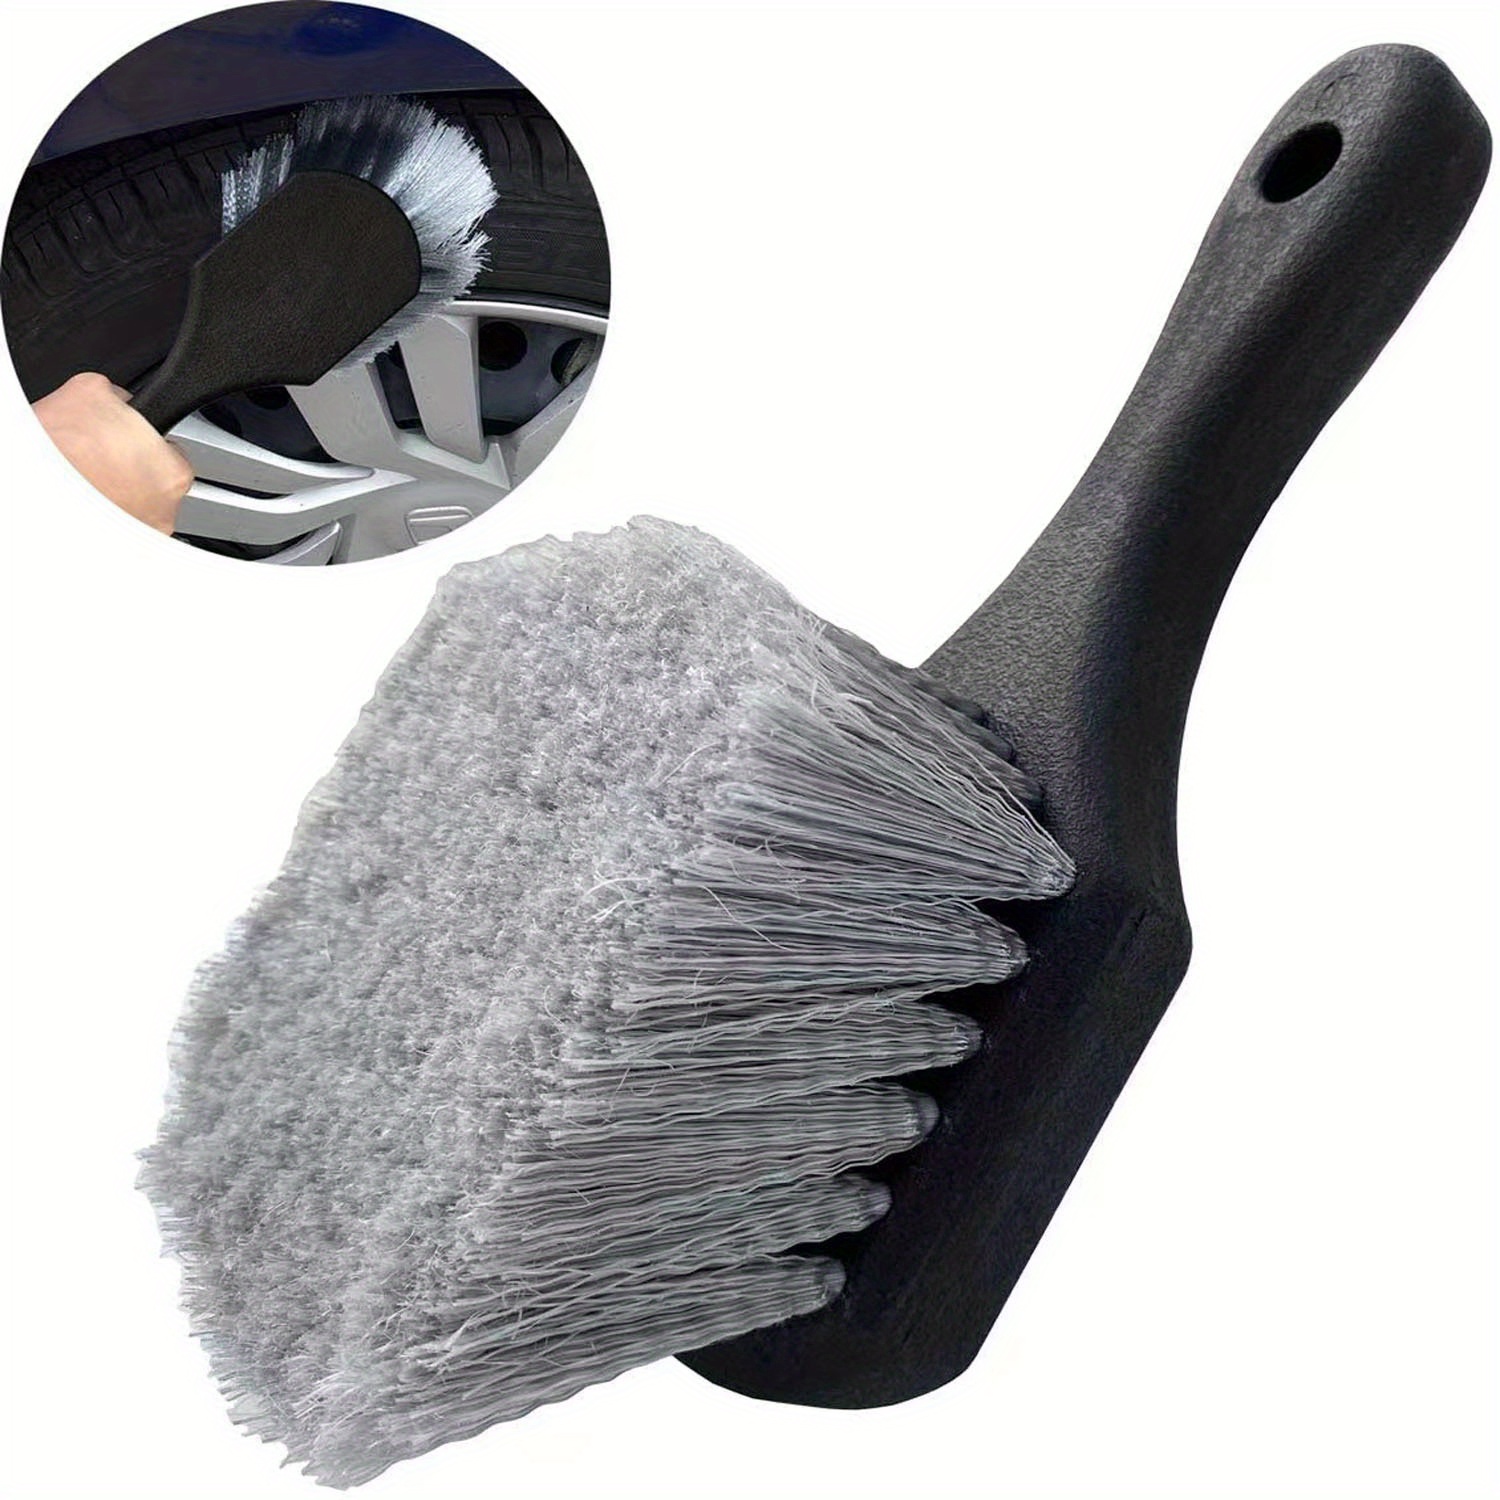 Soft Car Wash Brush